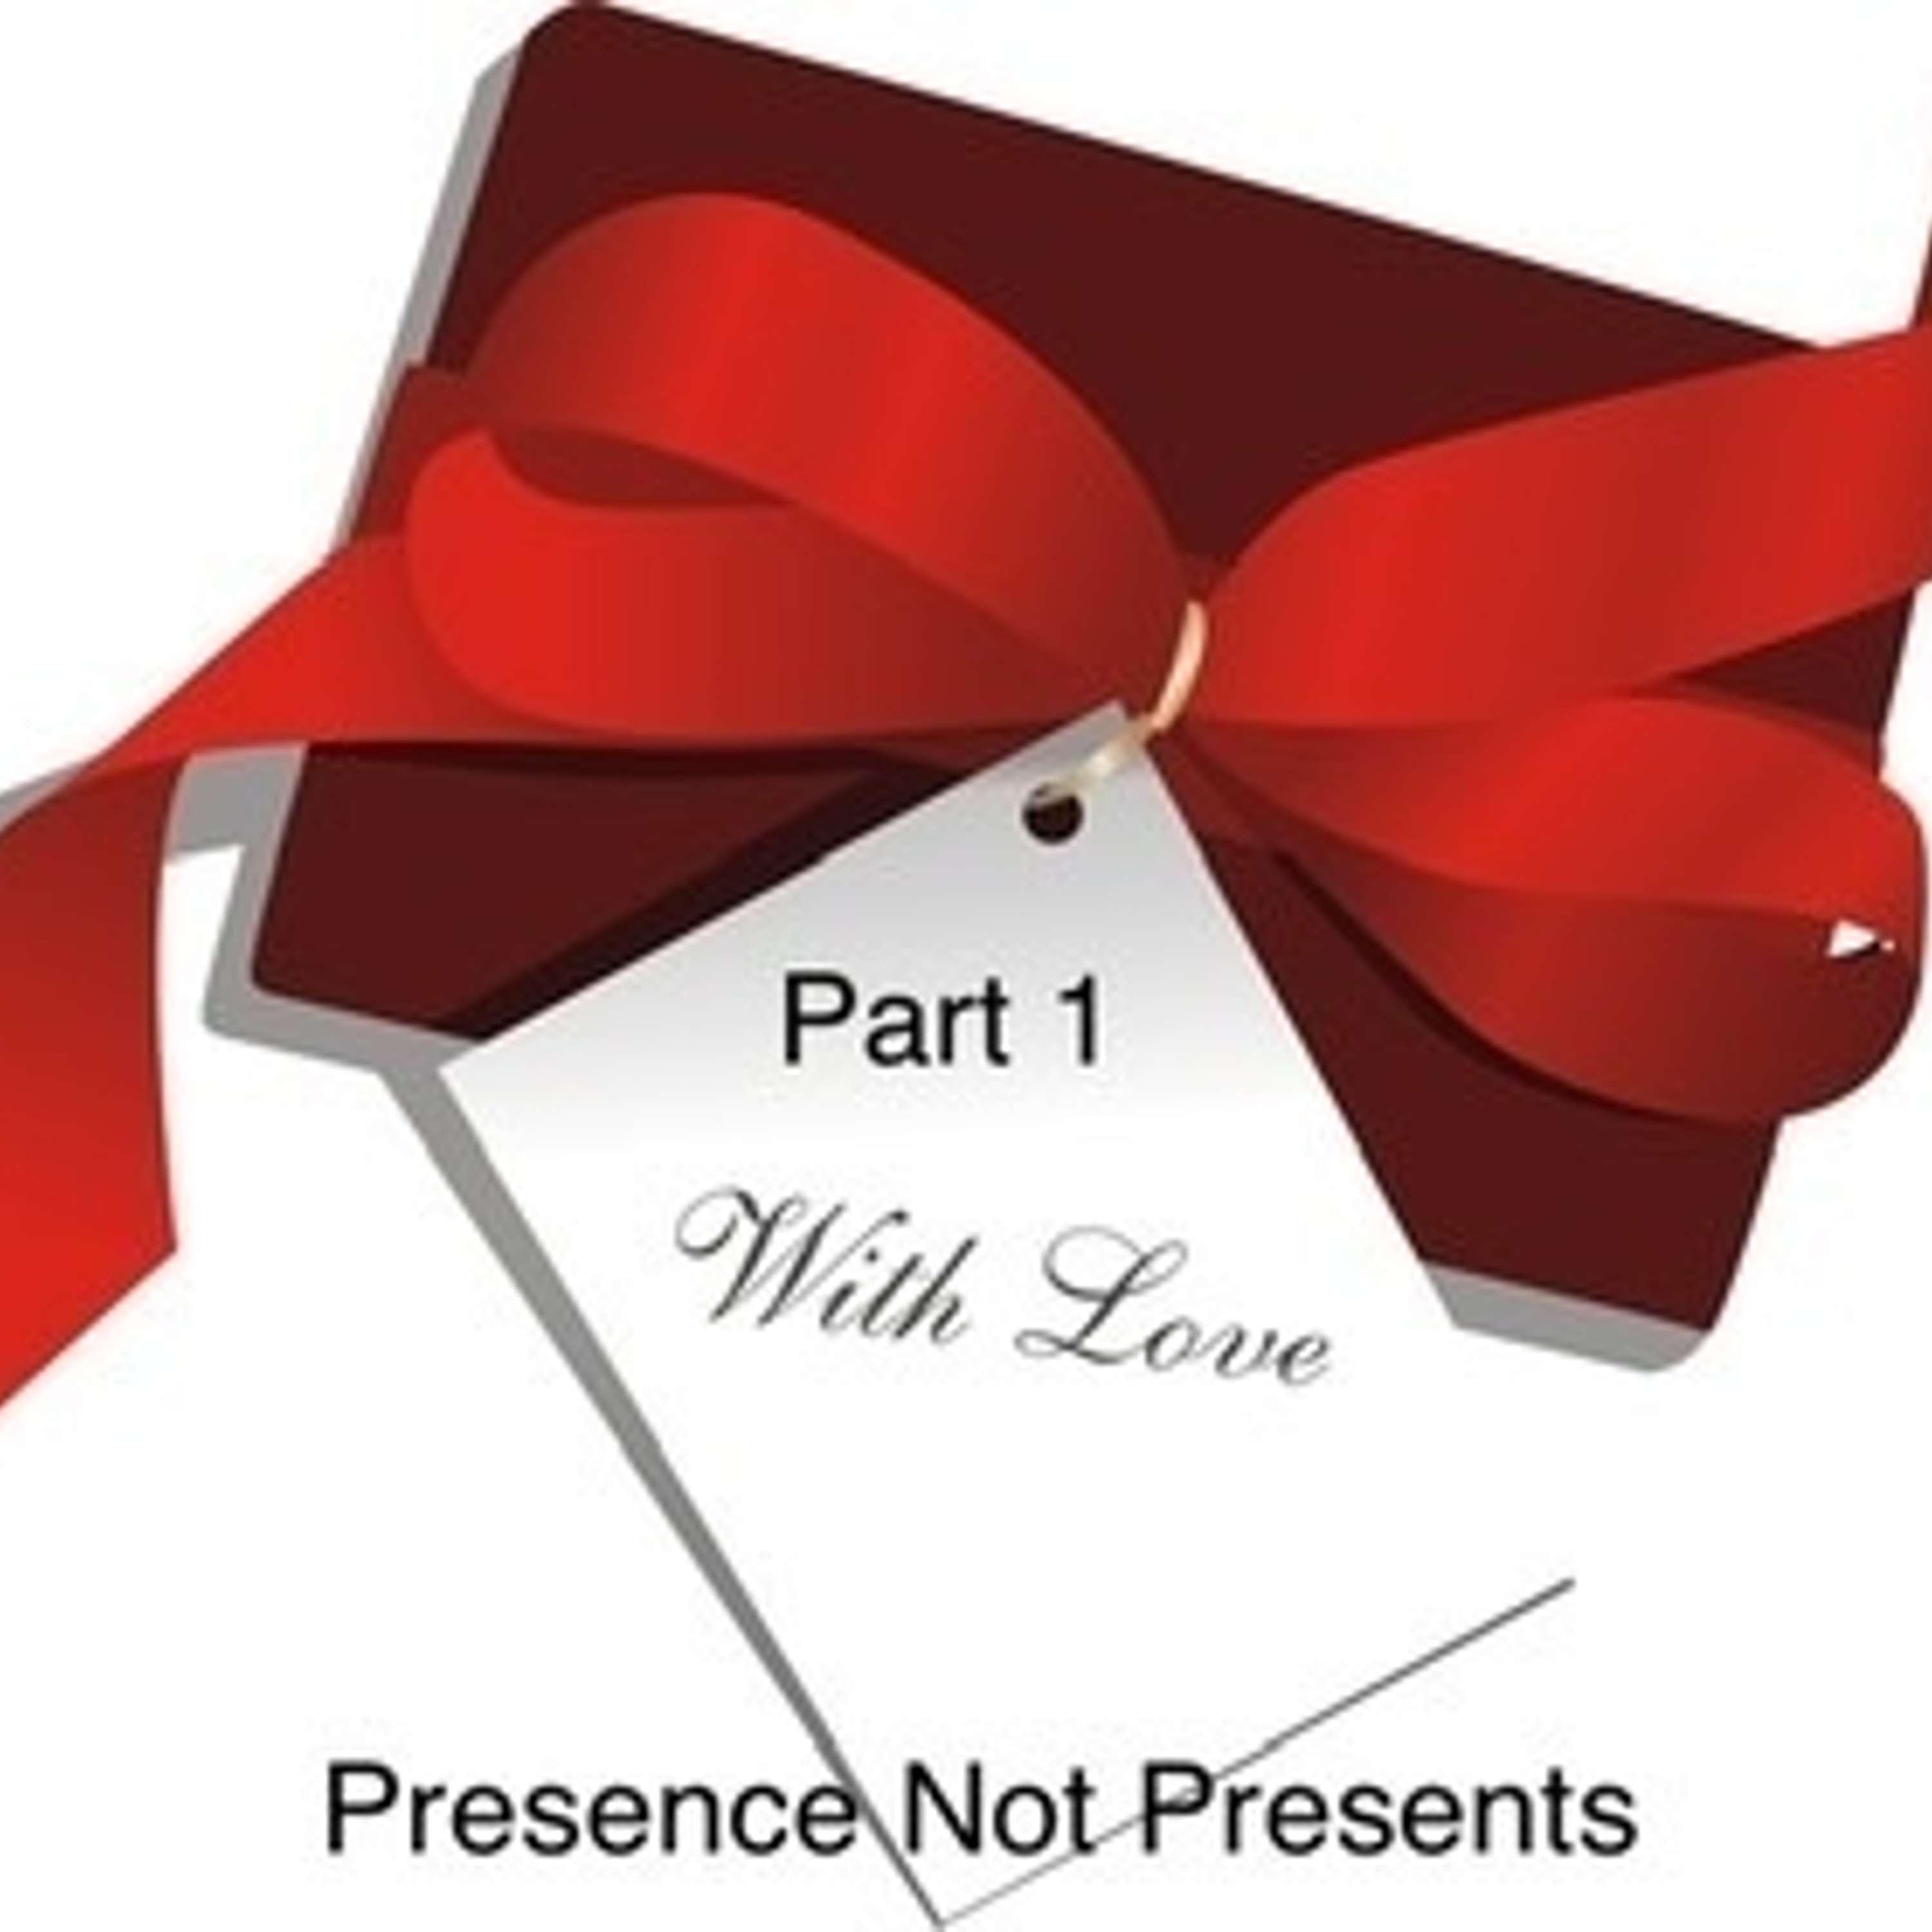 Presence Not Presents (Part 1)